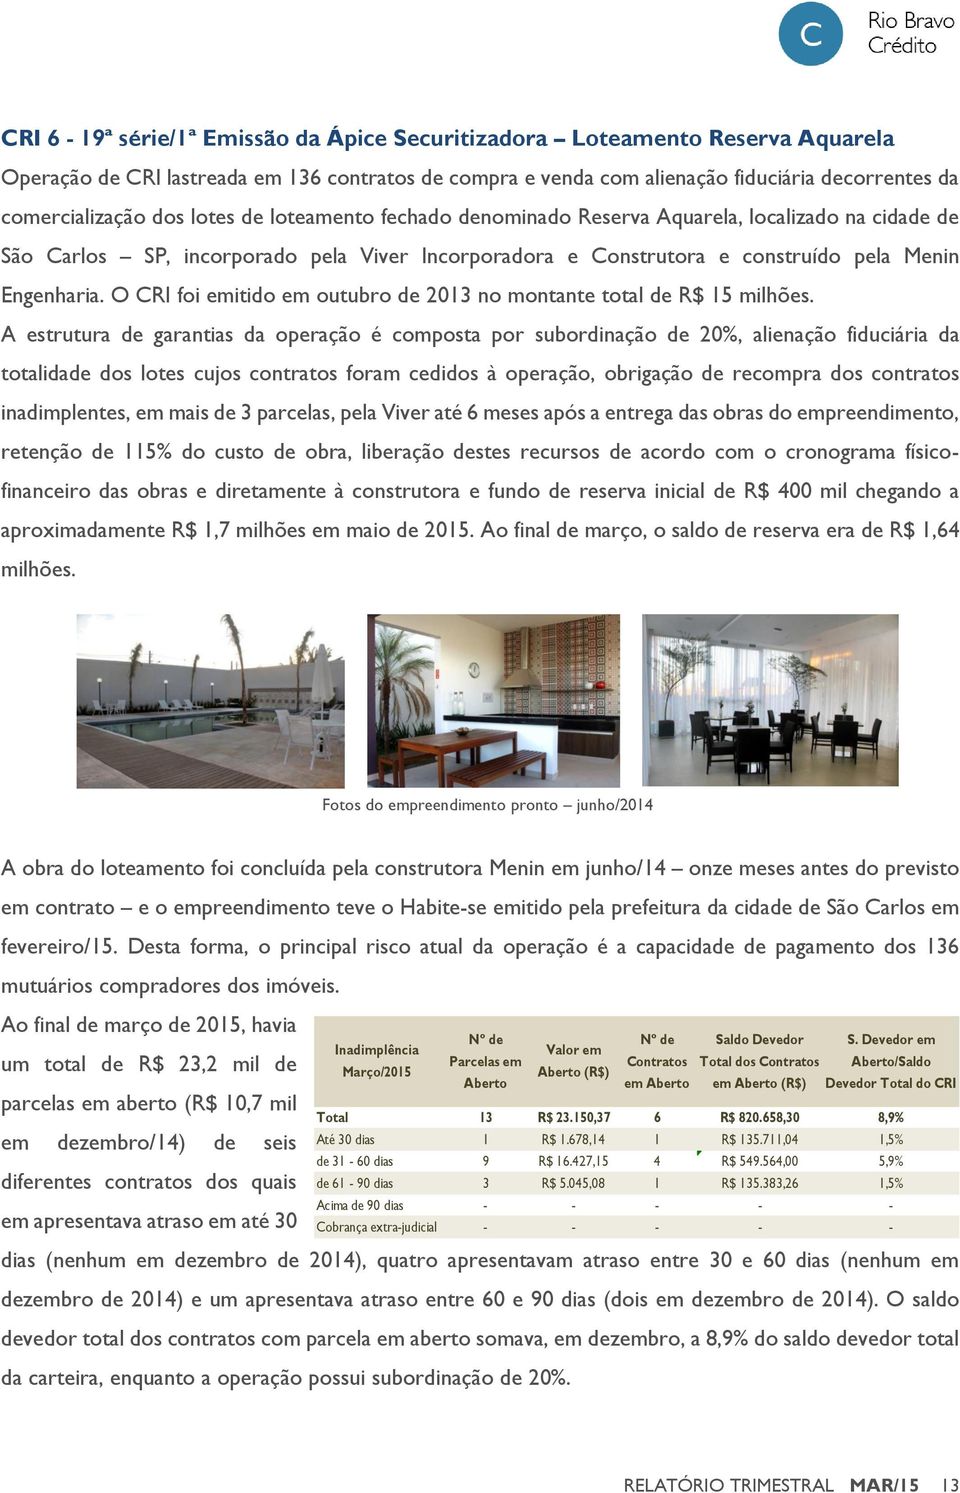 O CRI foi emitido em outubro de 2013 no montante total de R$ 15 milhões.